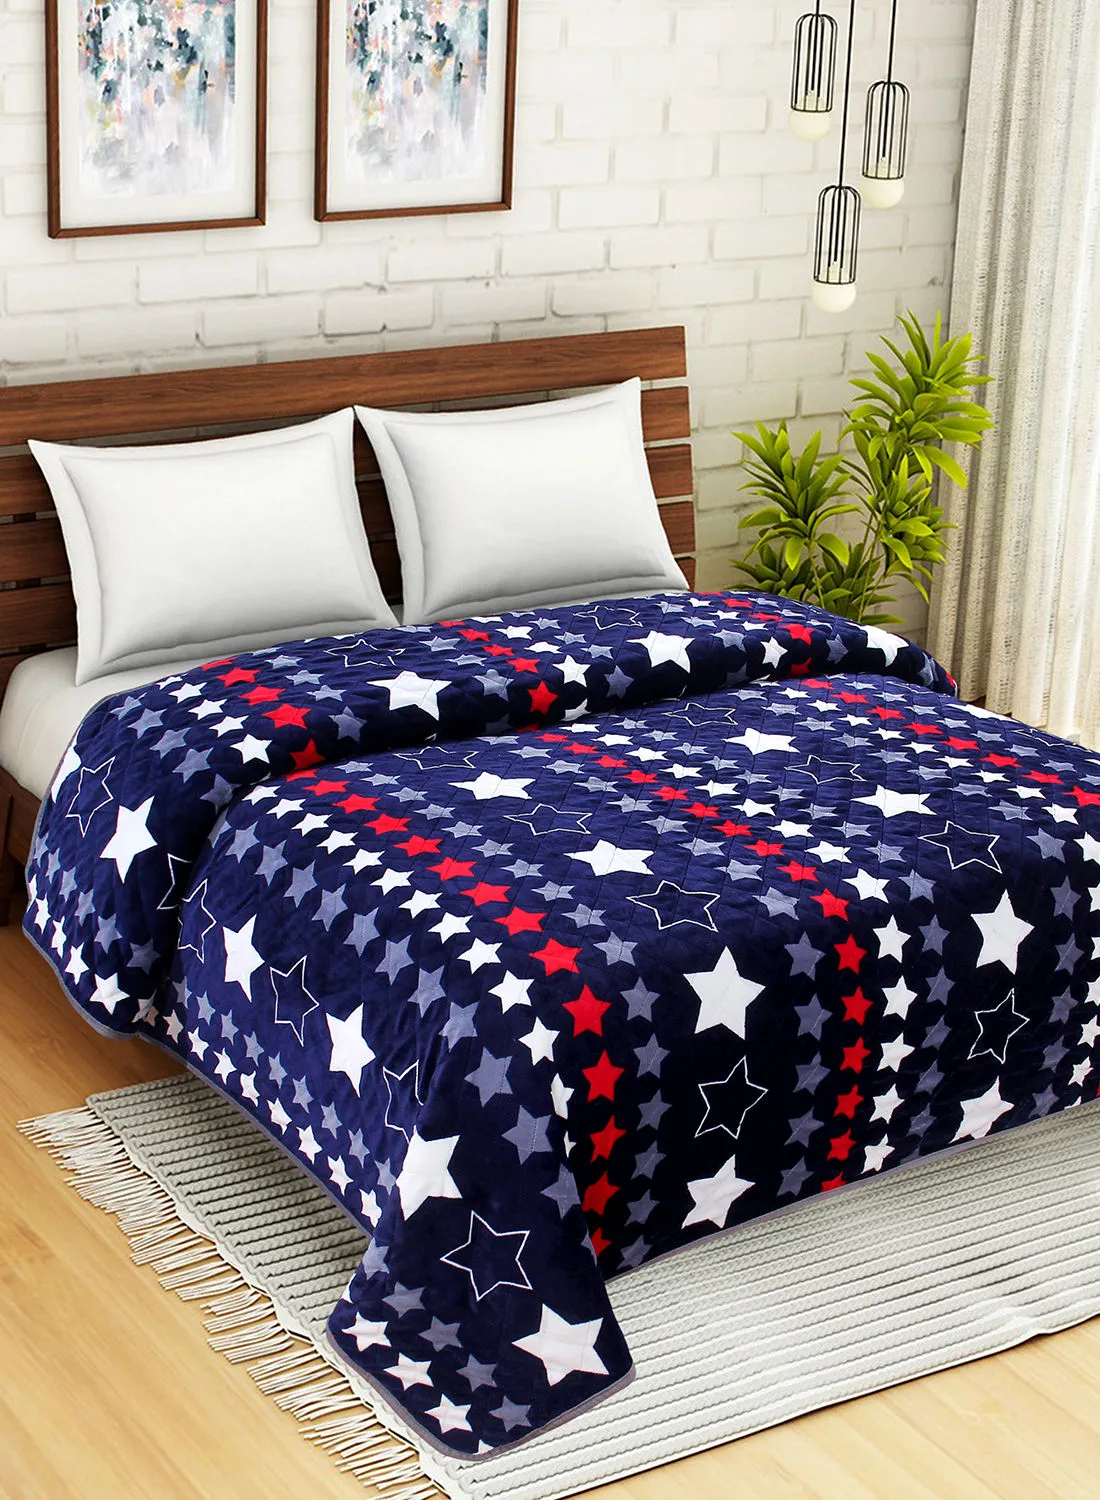 Hometown Light Blanket - 200X200 Cm - Blue/Red 100% Poyester Ultra Plush For Sofa Or Bedroom